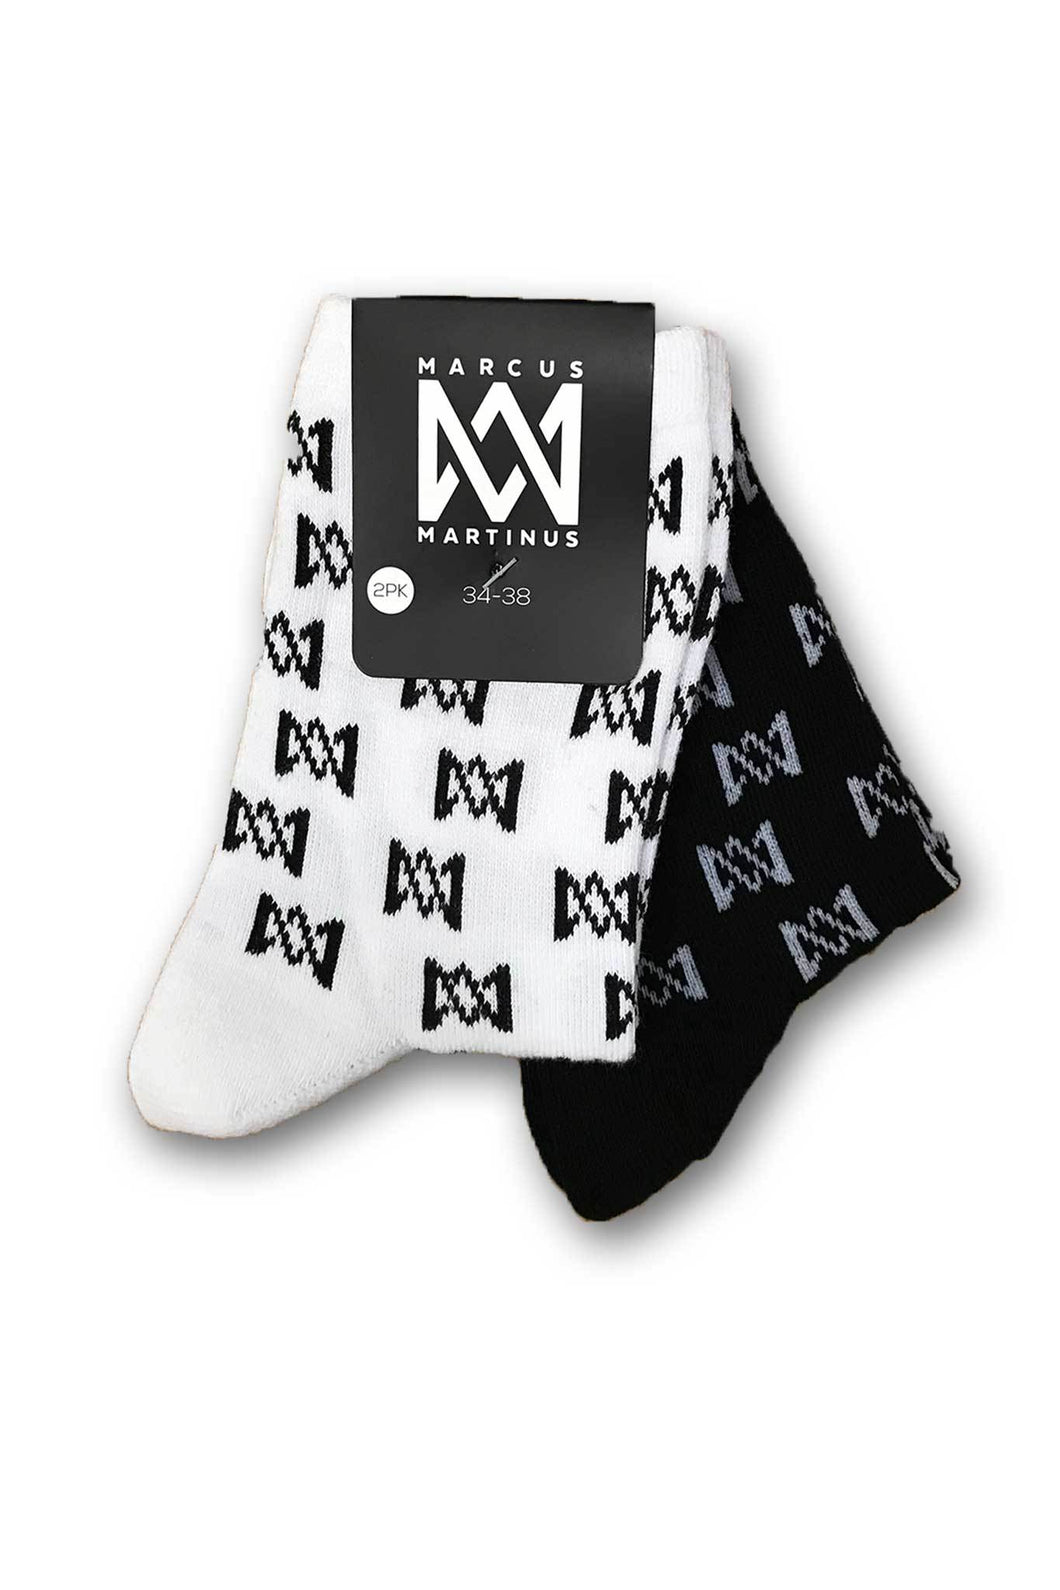 Socs - Logo Socks 2-PK - Black & White